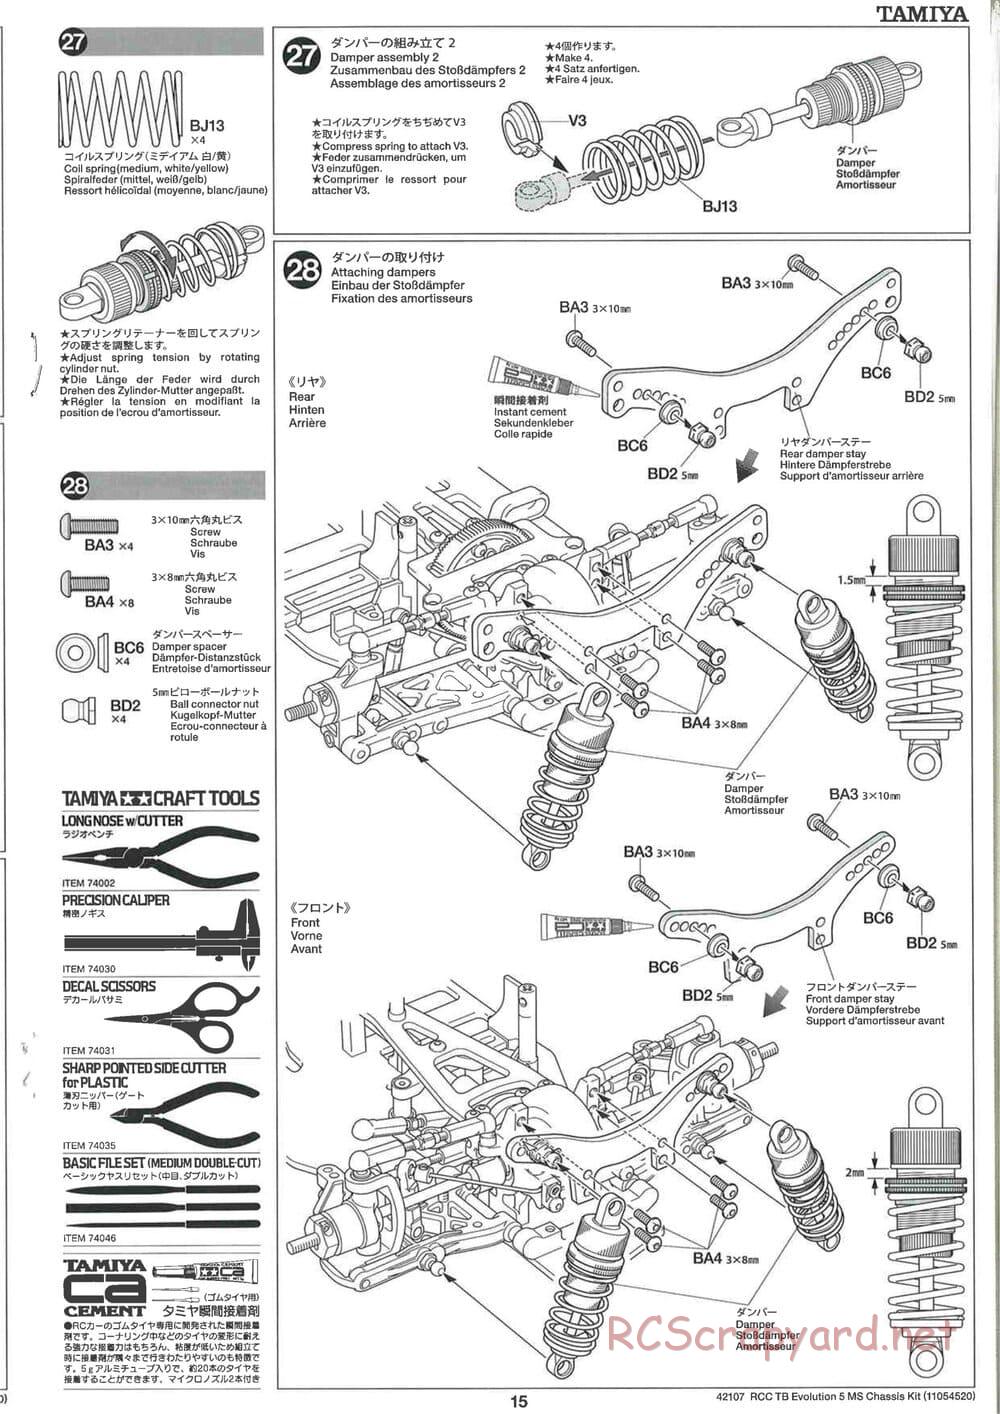 Tamiya - TB Evolution 5 MS Chassis - Manual - Page 15